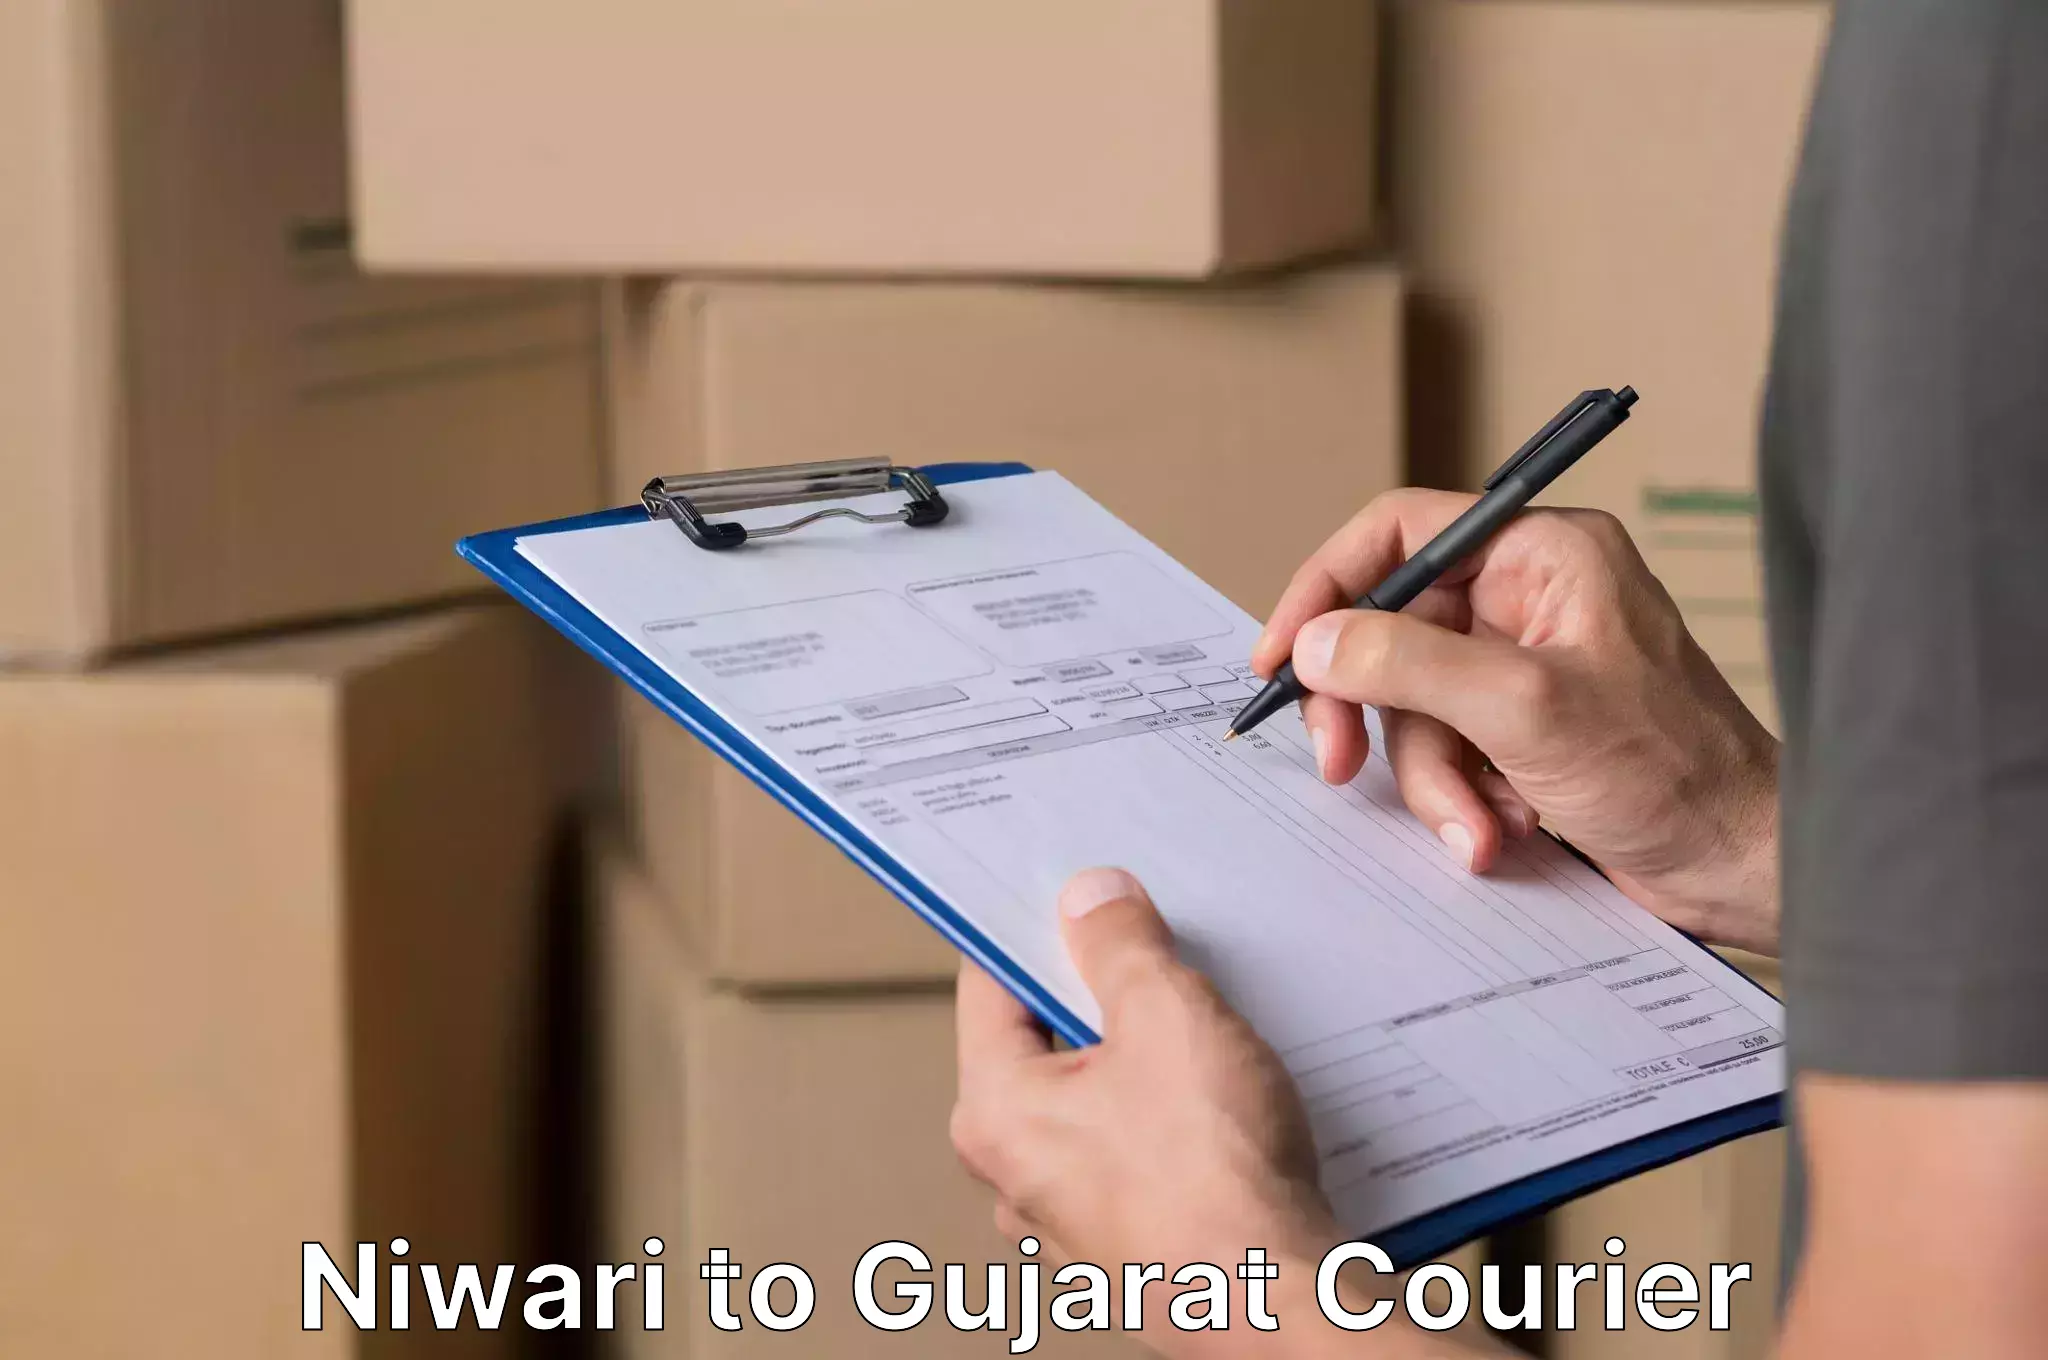 Furniture moving experts in Niwari to Gujarat